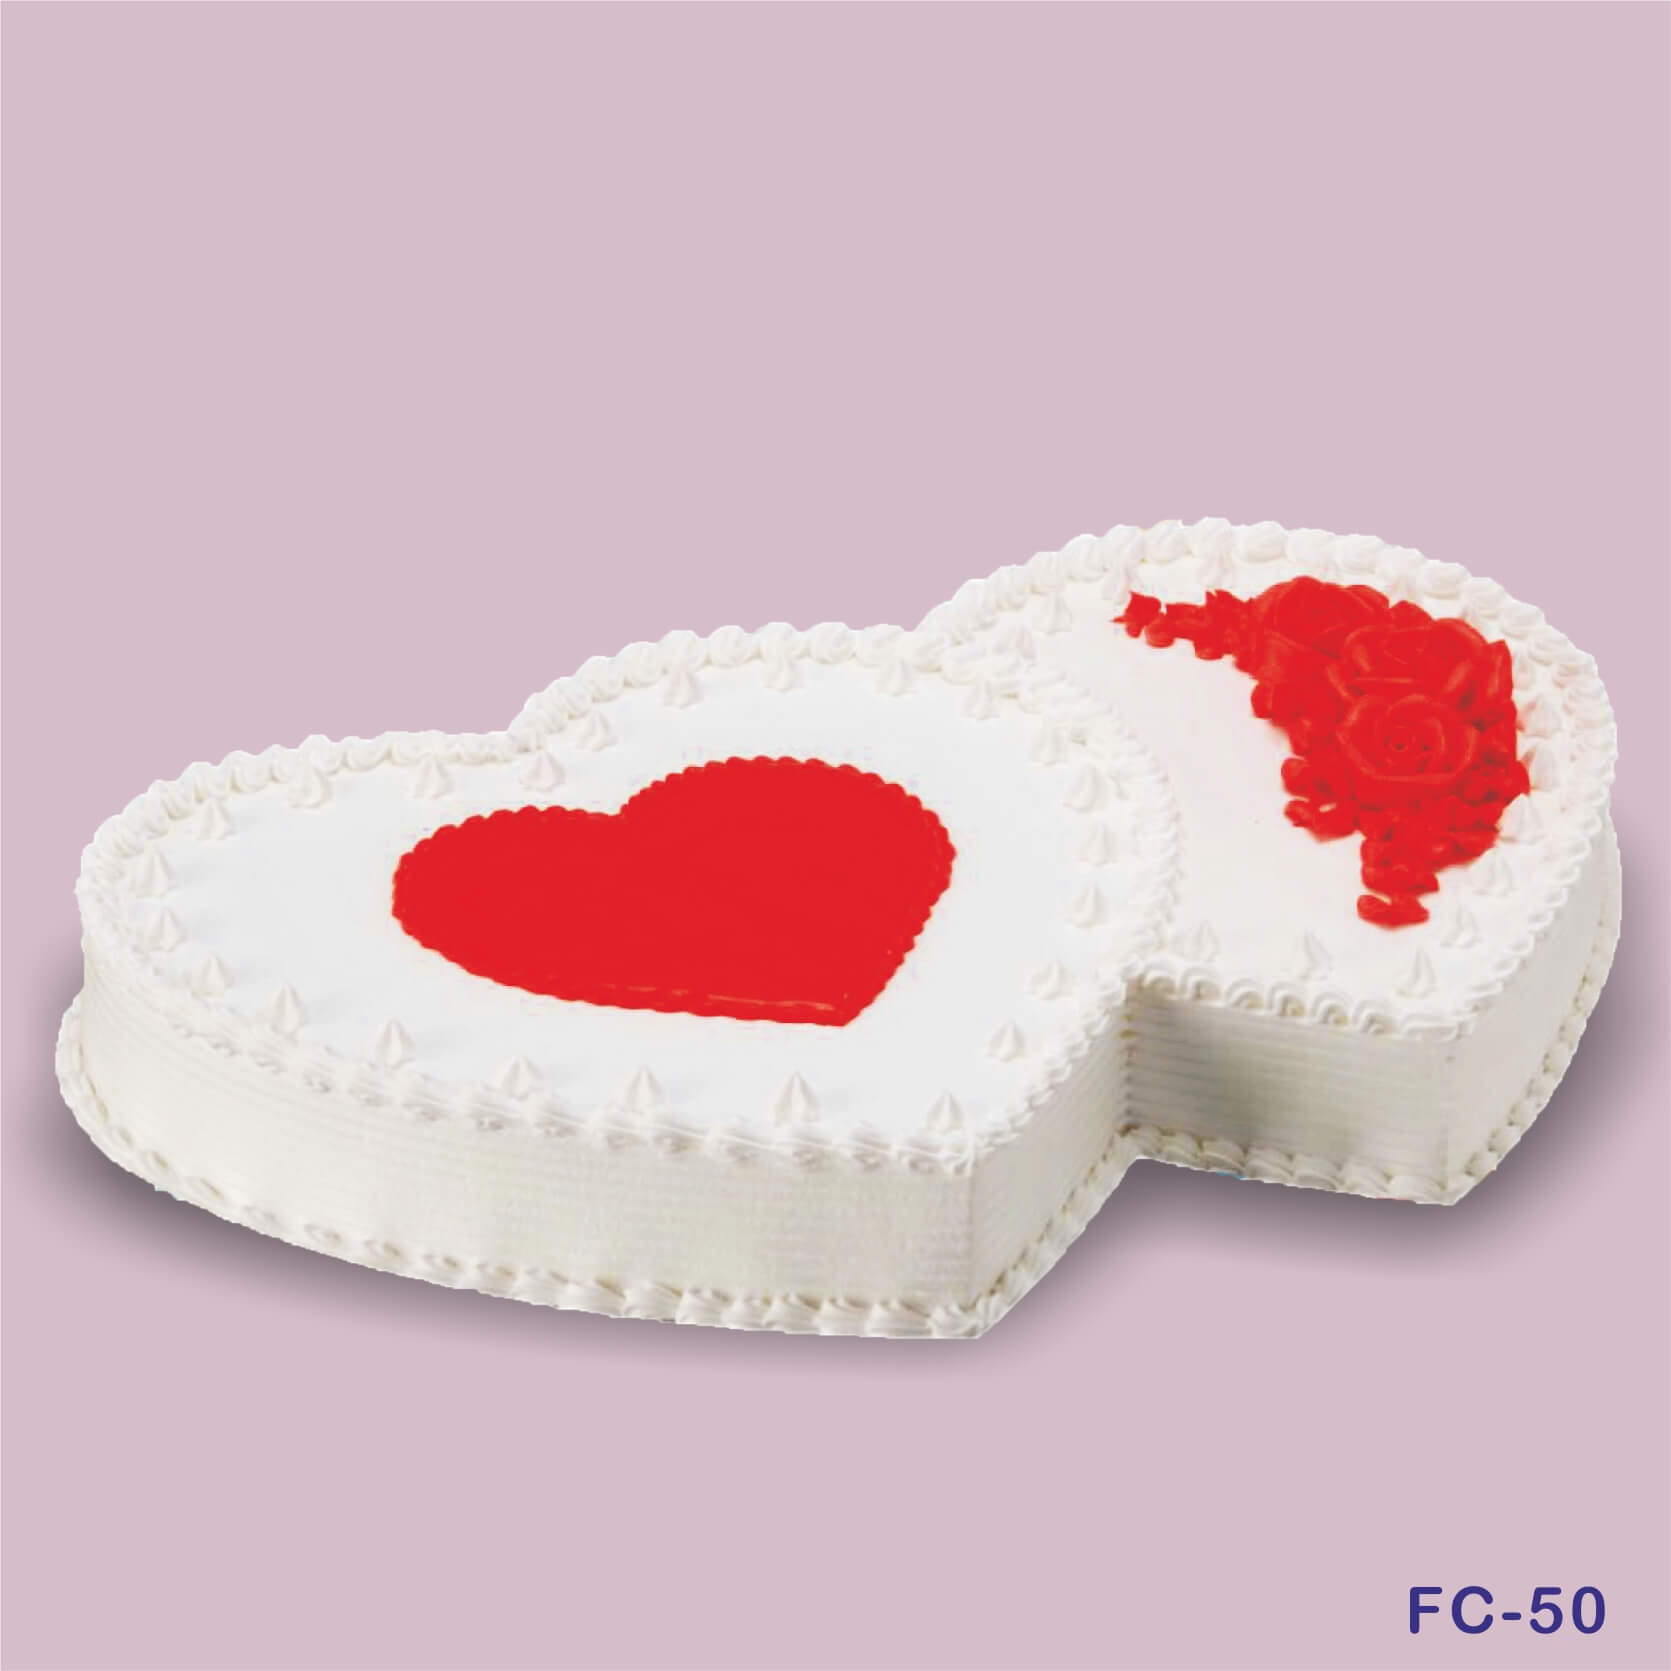 Send Red velvet heart shape cake online by GiftJaipur in Rajasthan